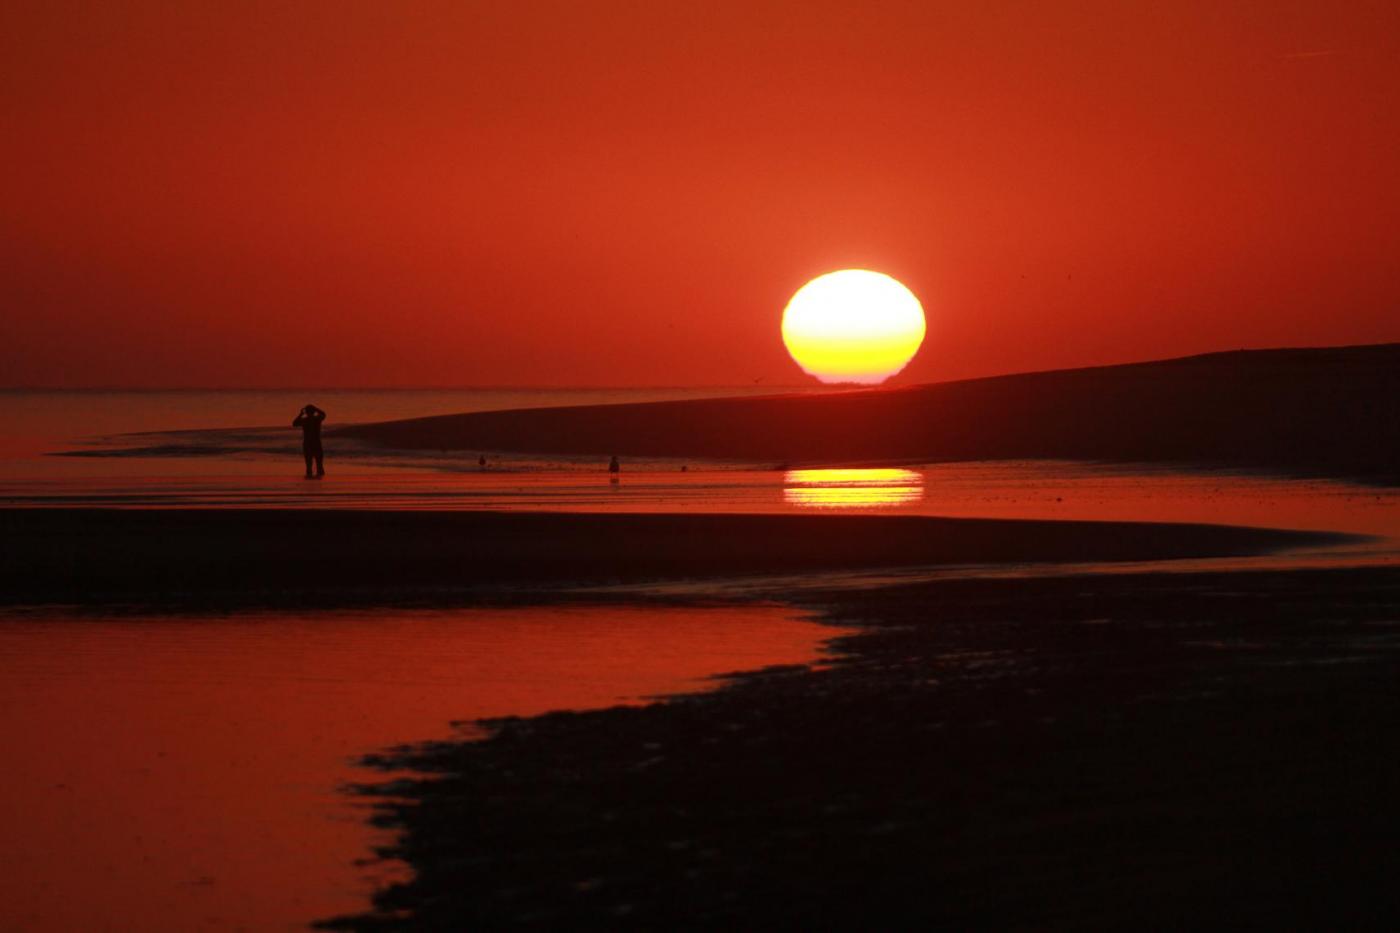 Las Mejores Puestas De Sol En La Playa Descargar Imágenes Gratis